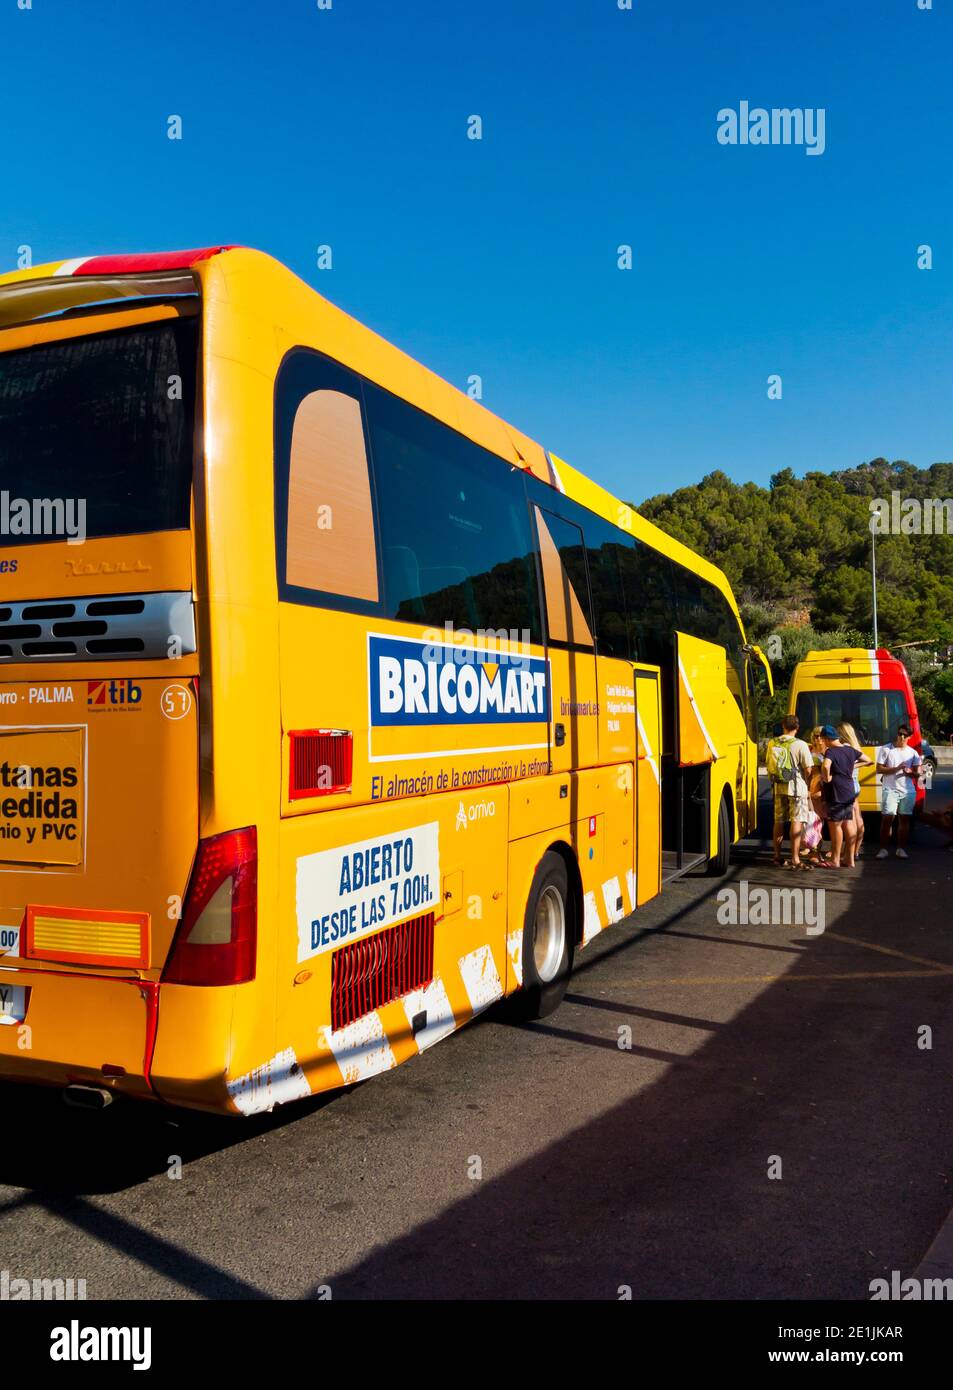 Autobús en una parada en el Puerto de Soller esperando para transportar  pasajeros a Palma en Mallorca una isla balear en el Mediterráneo español  Fotografía de stock - Alamy